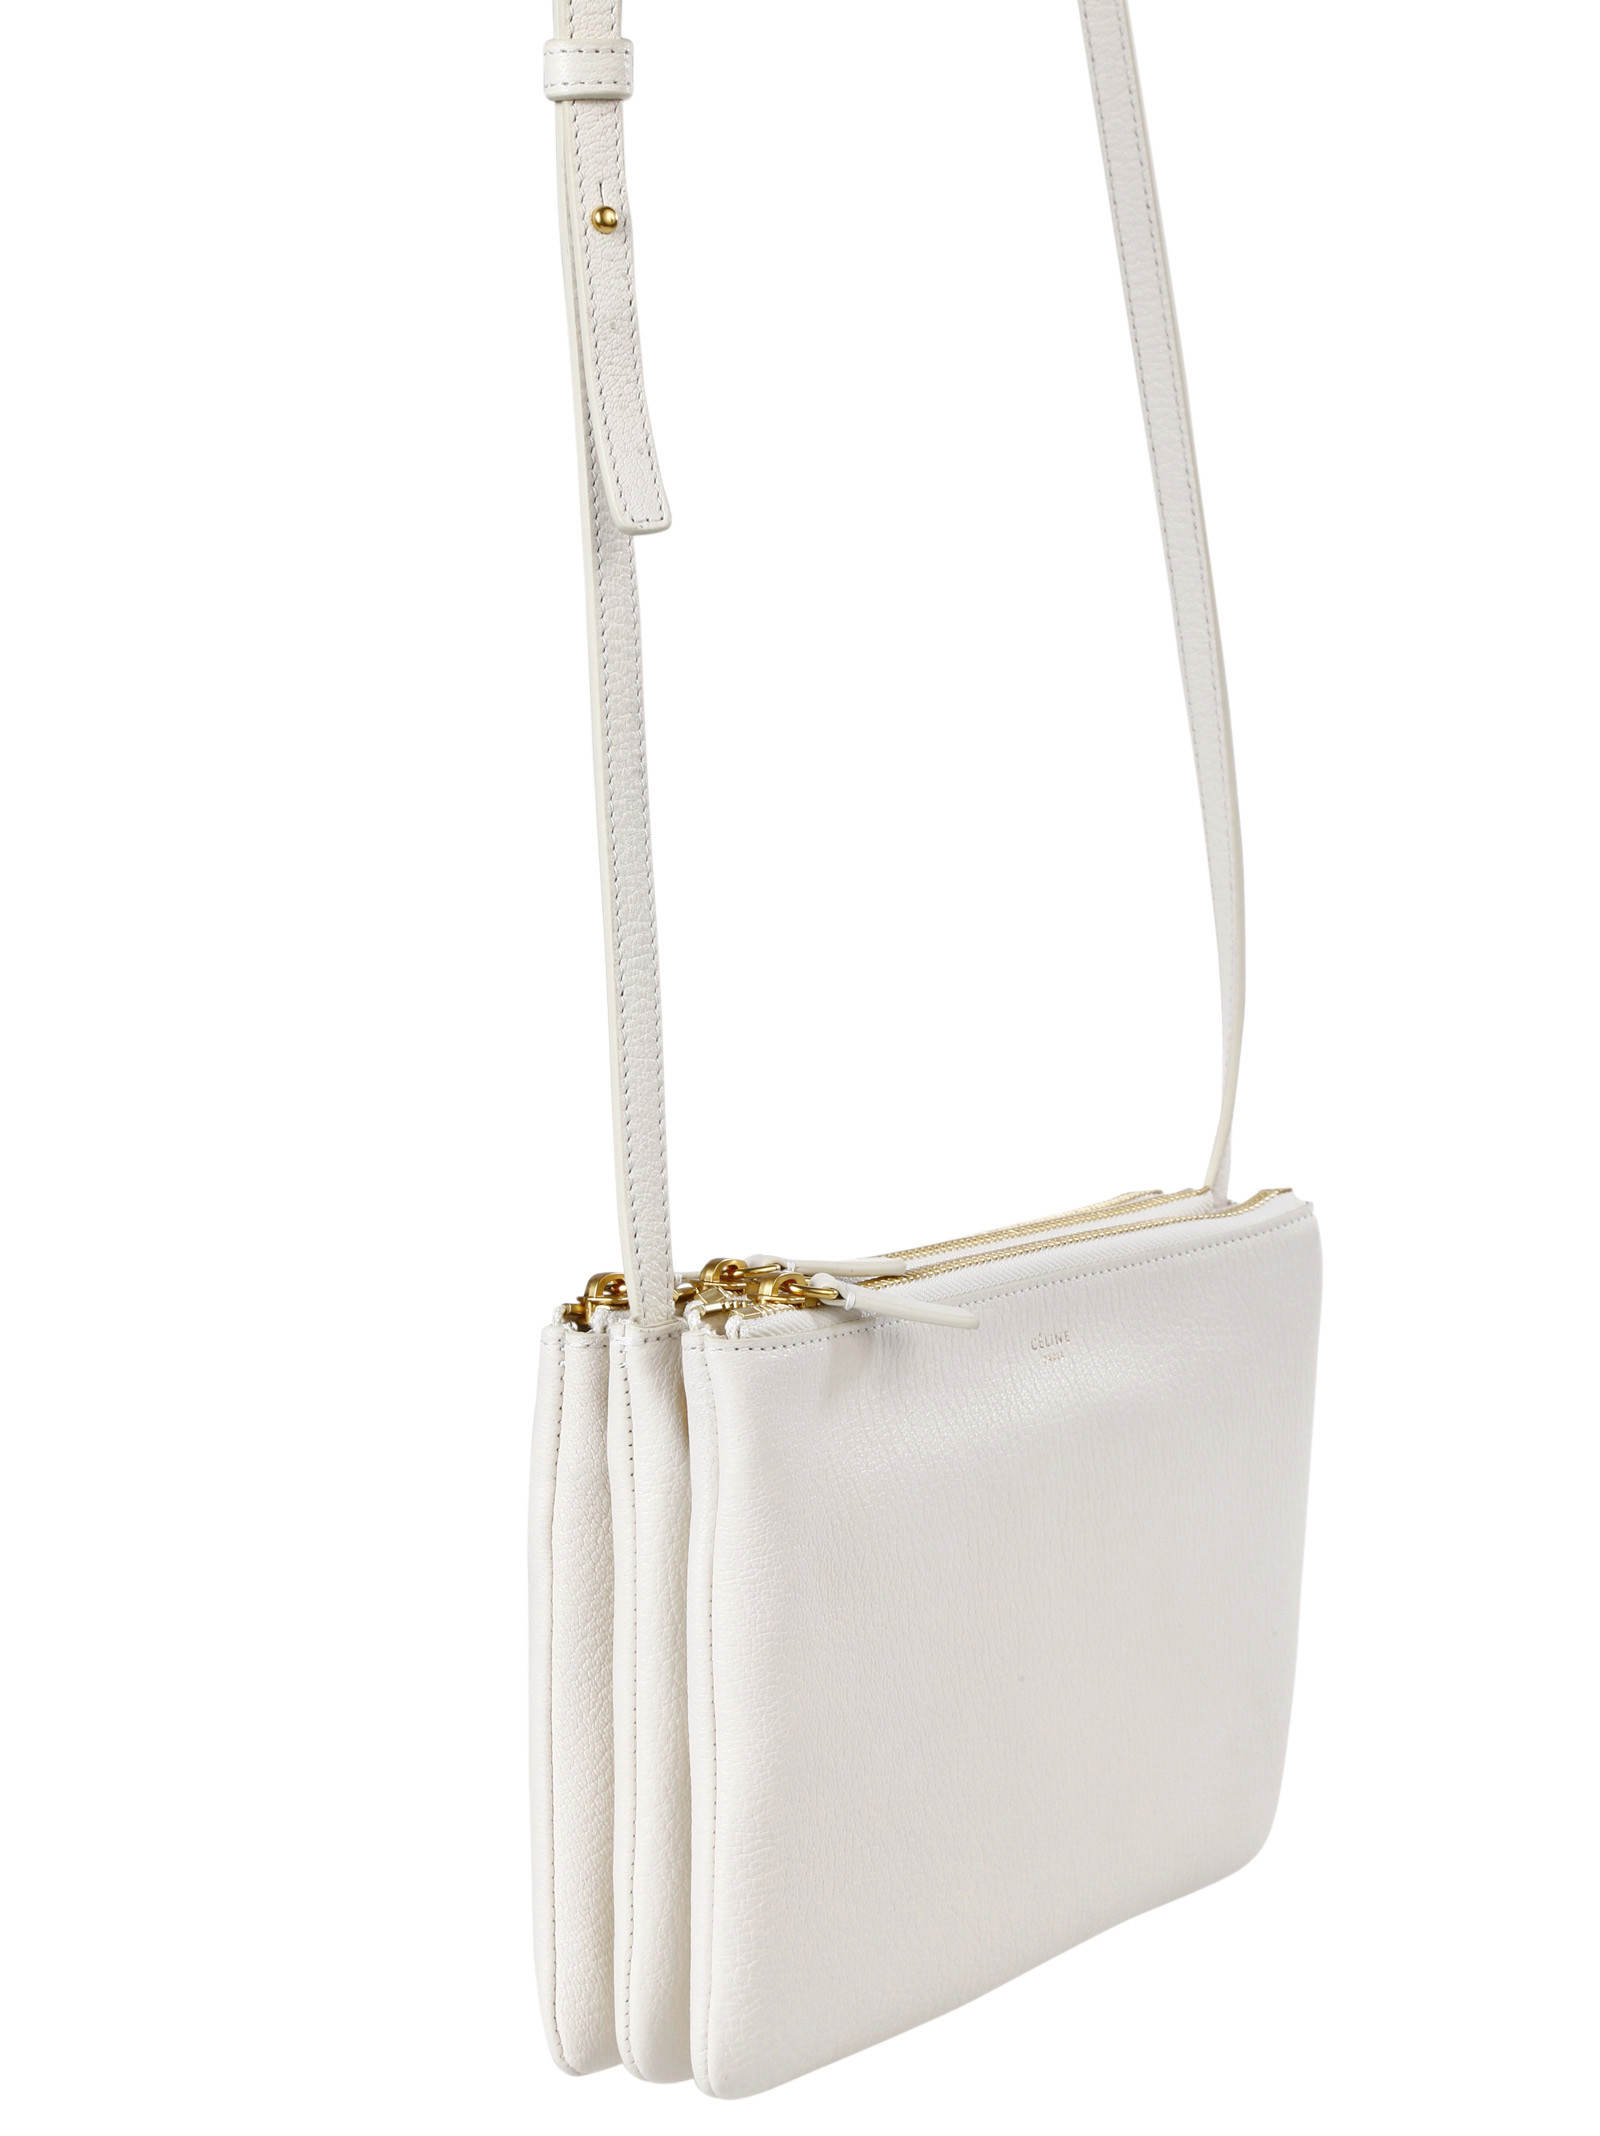 celine shoulder luggage bag - celine white handbag